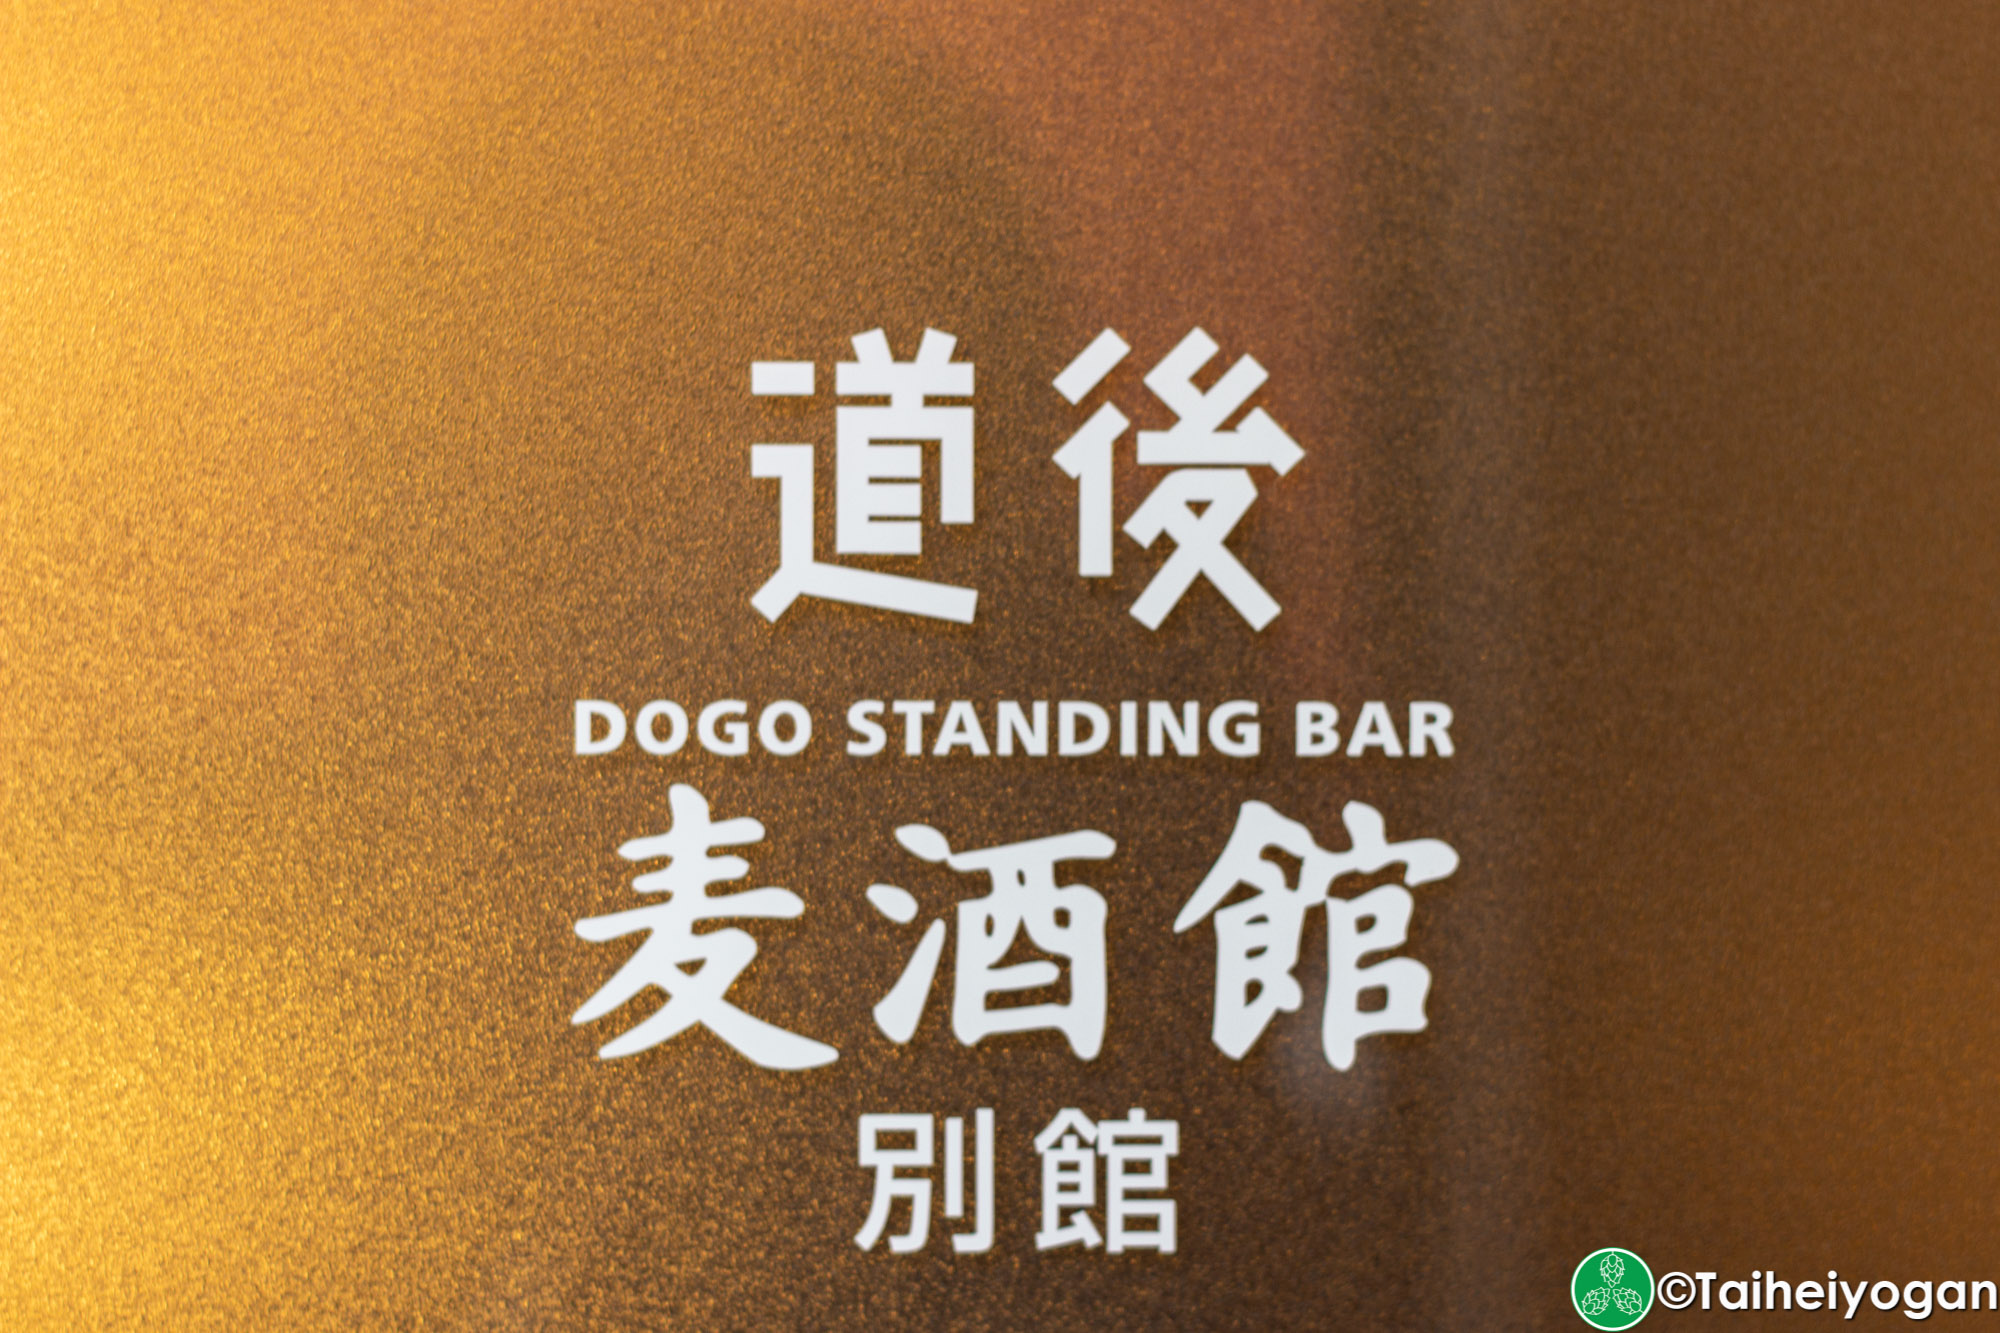 道後麦酒館 別館・Dogo Standing Bar - Entrance - Sign